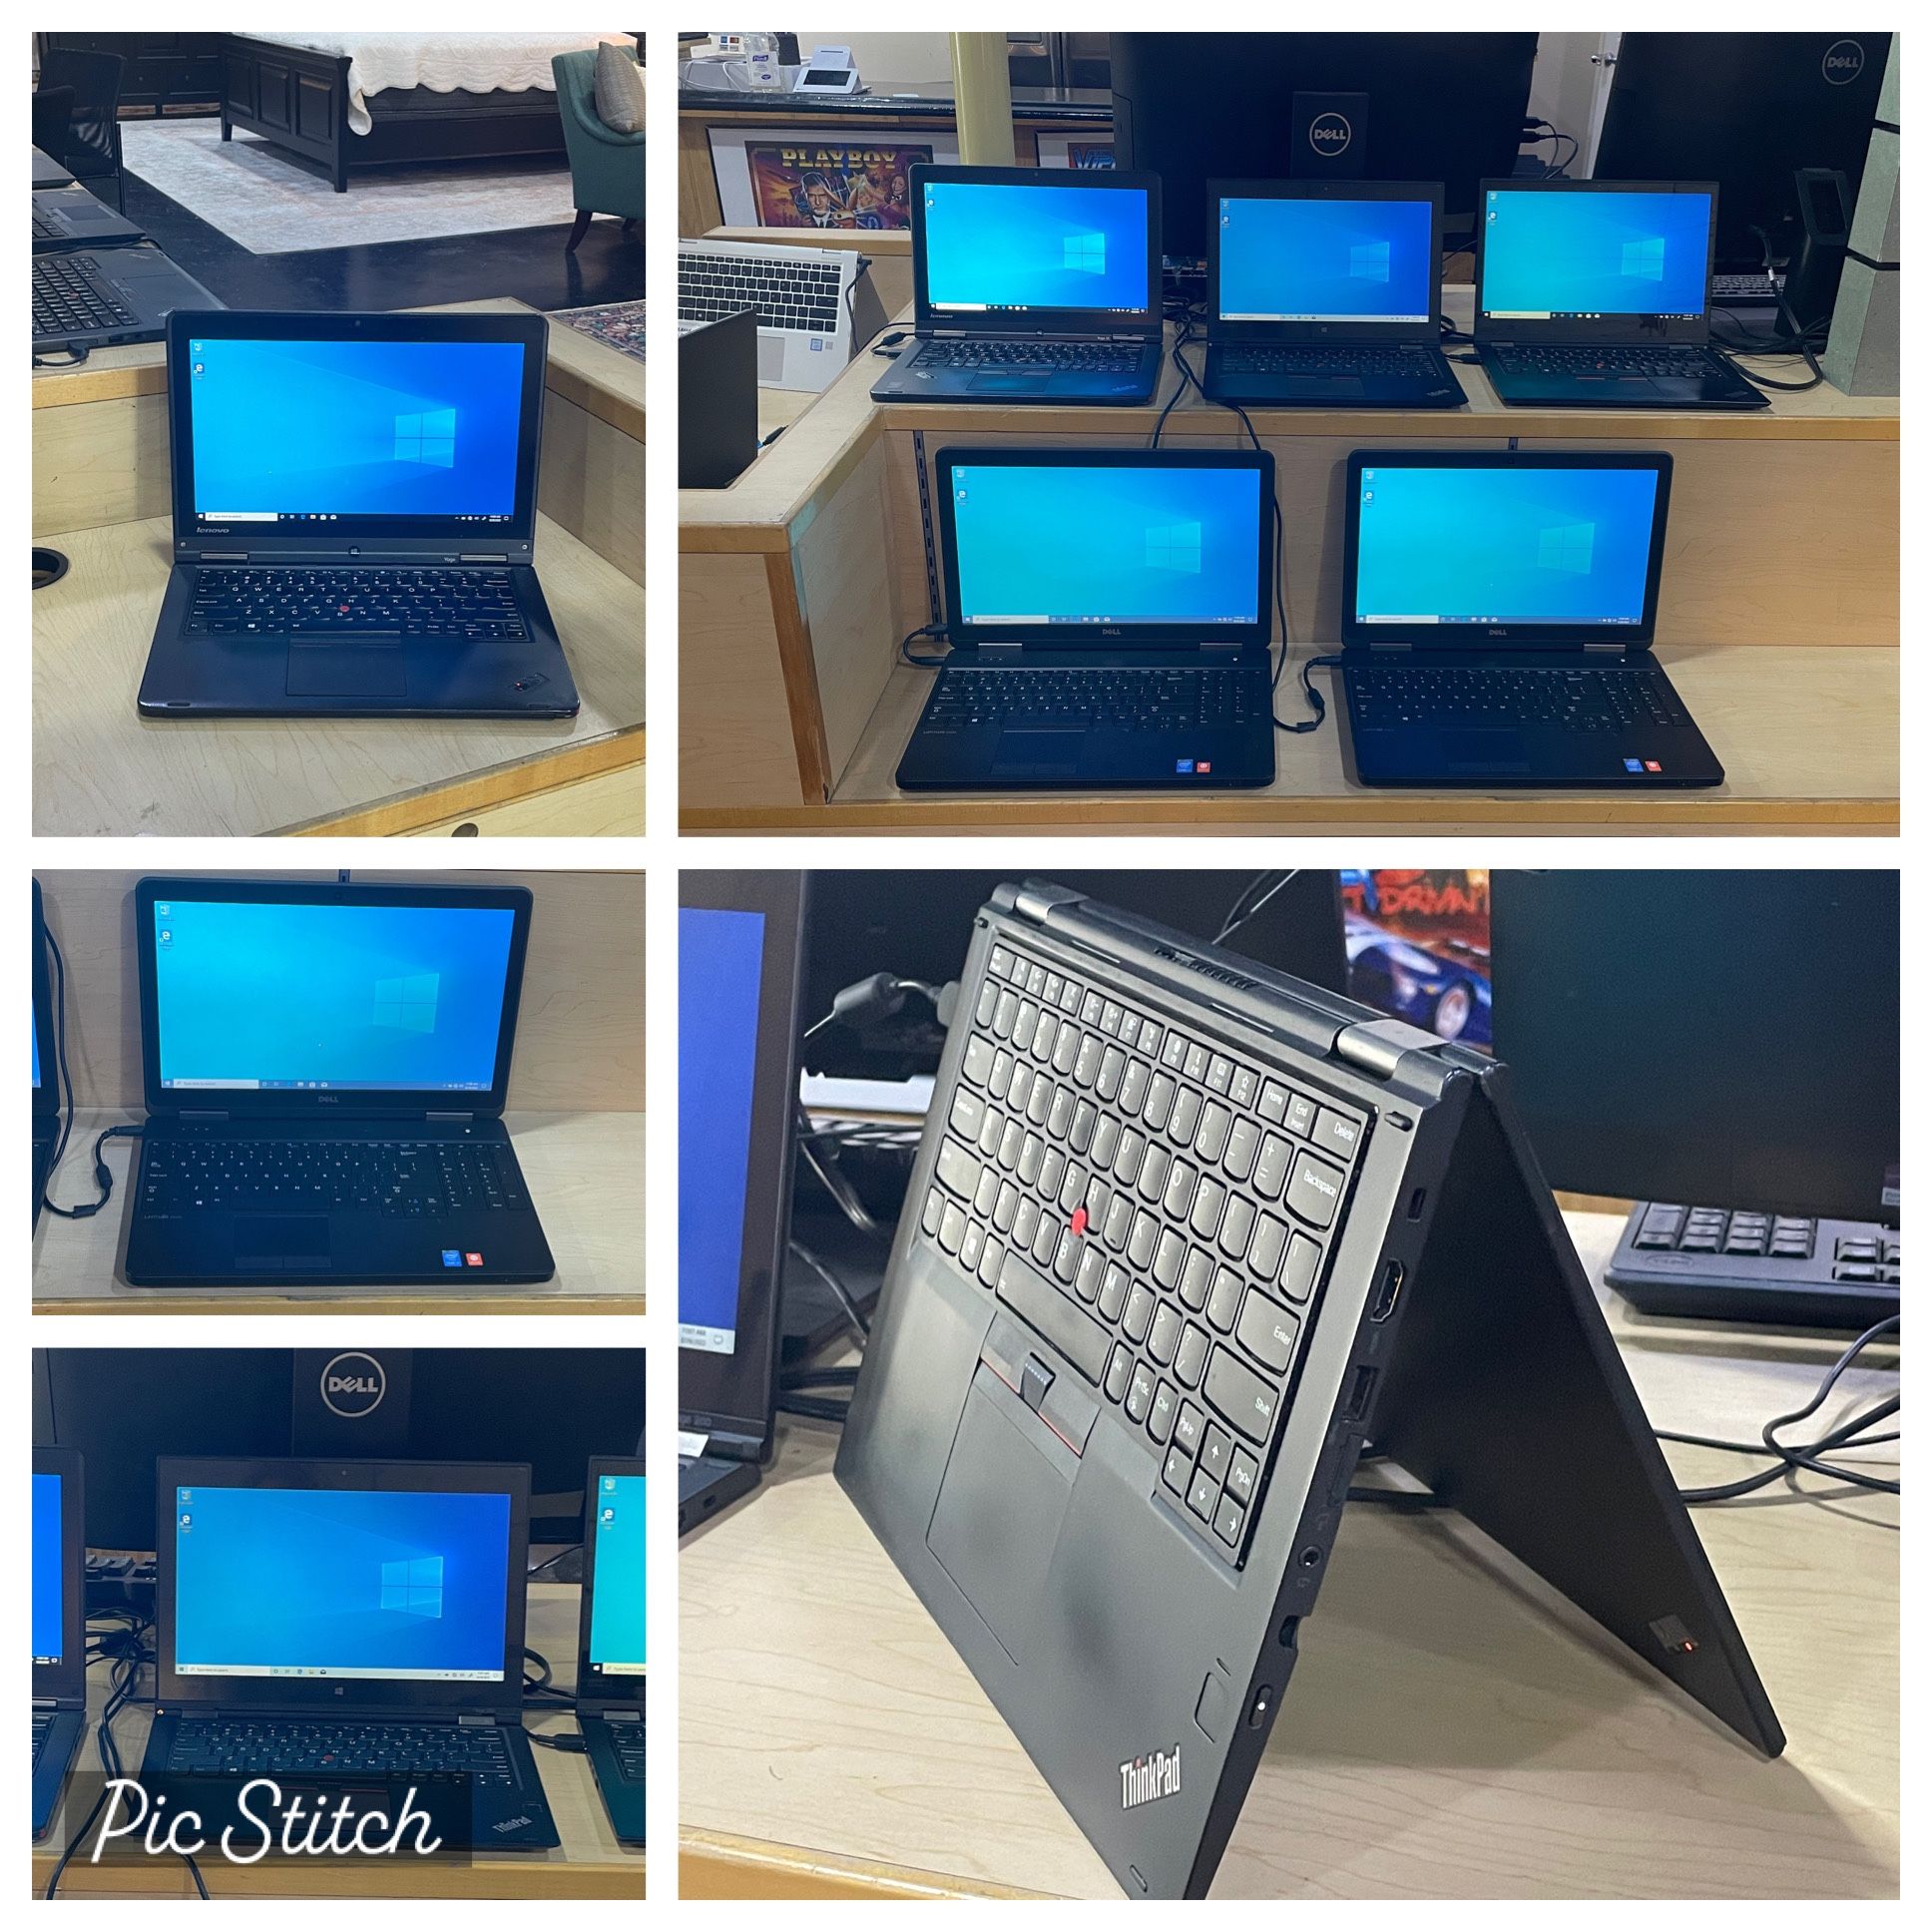 Laptops - i7 Processors